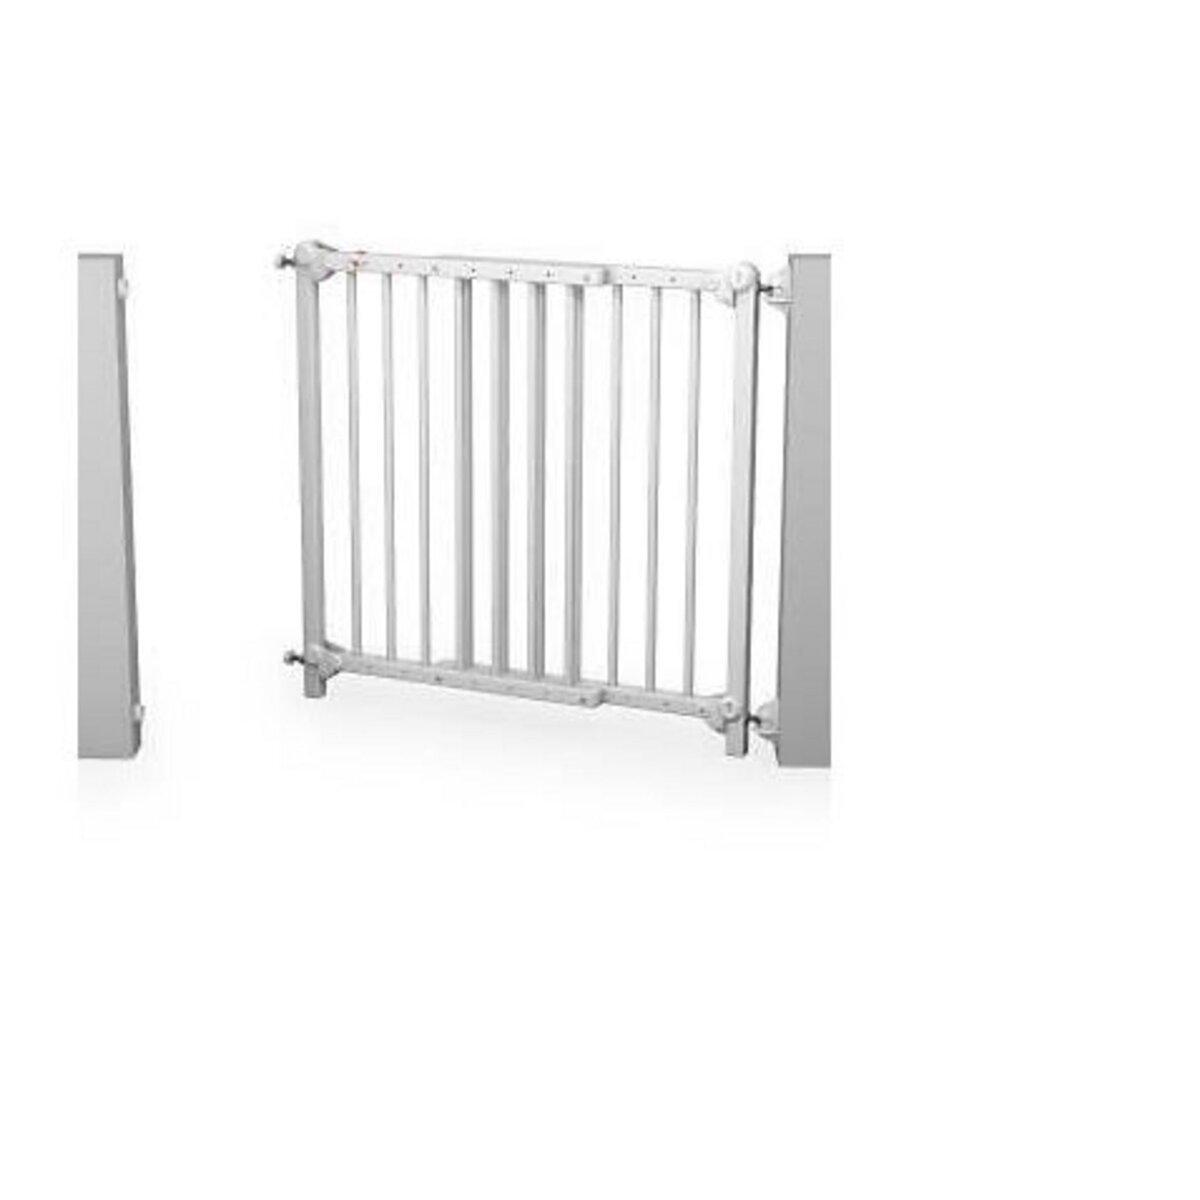 AT4 Barrière de sécurité bébé extensible en bois 73-110 cm - fixe et portillon